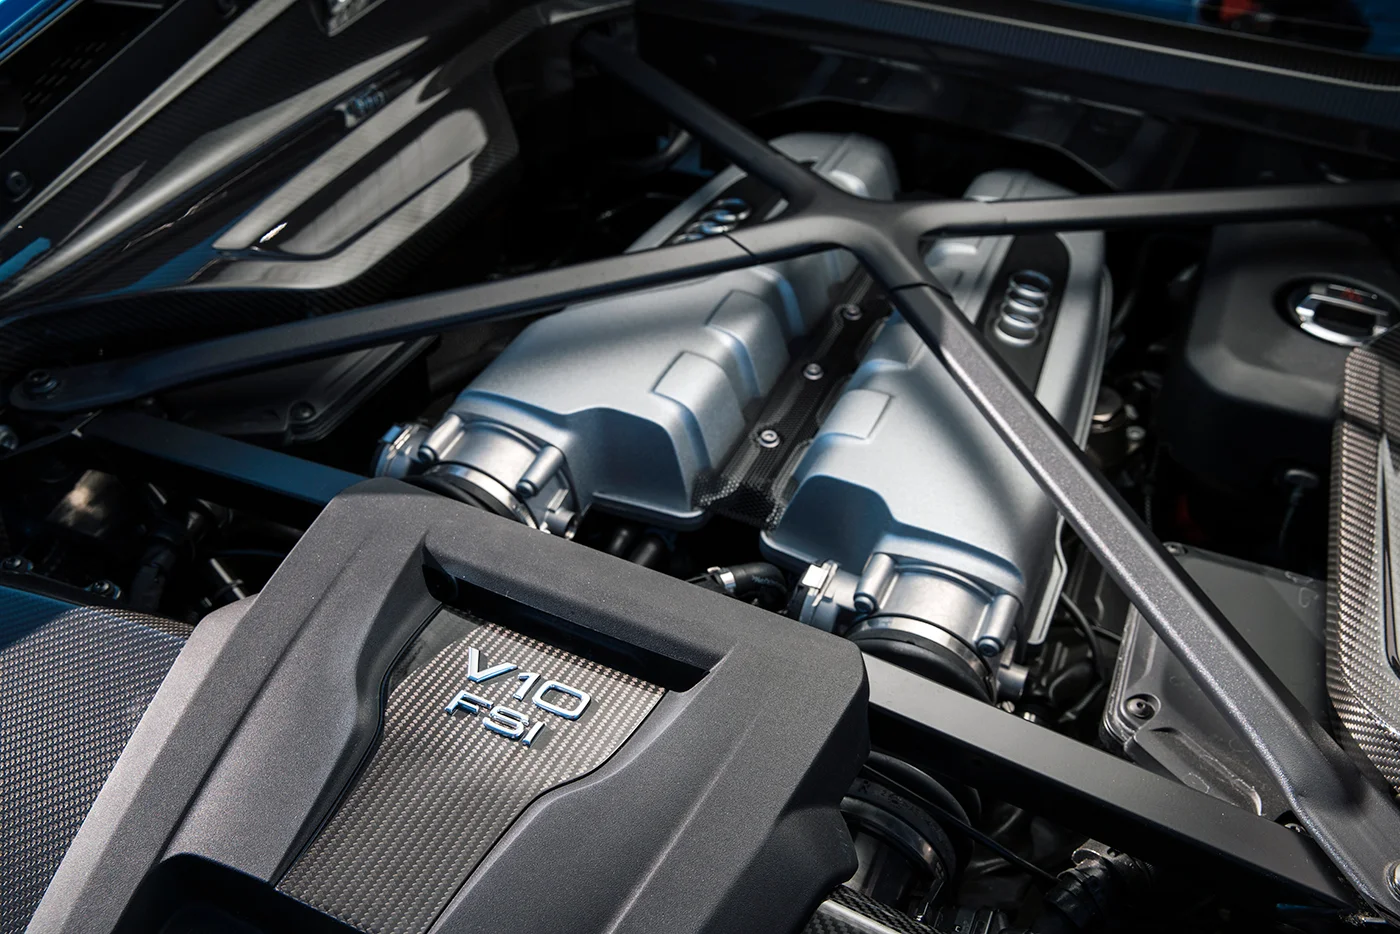 Audi R8 được xem là siêu xe hút khí tự nhiên phổ biến nhất hiện nay